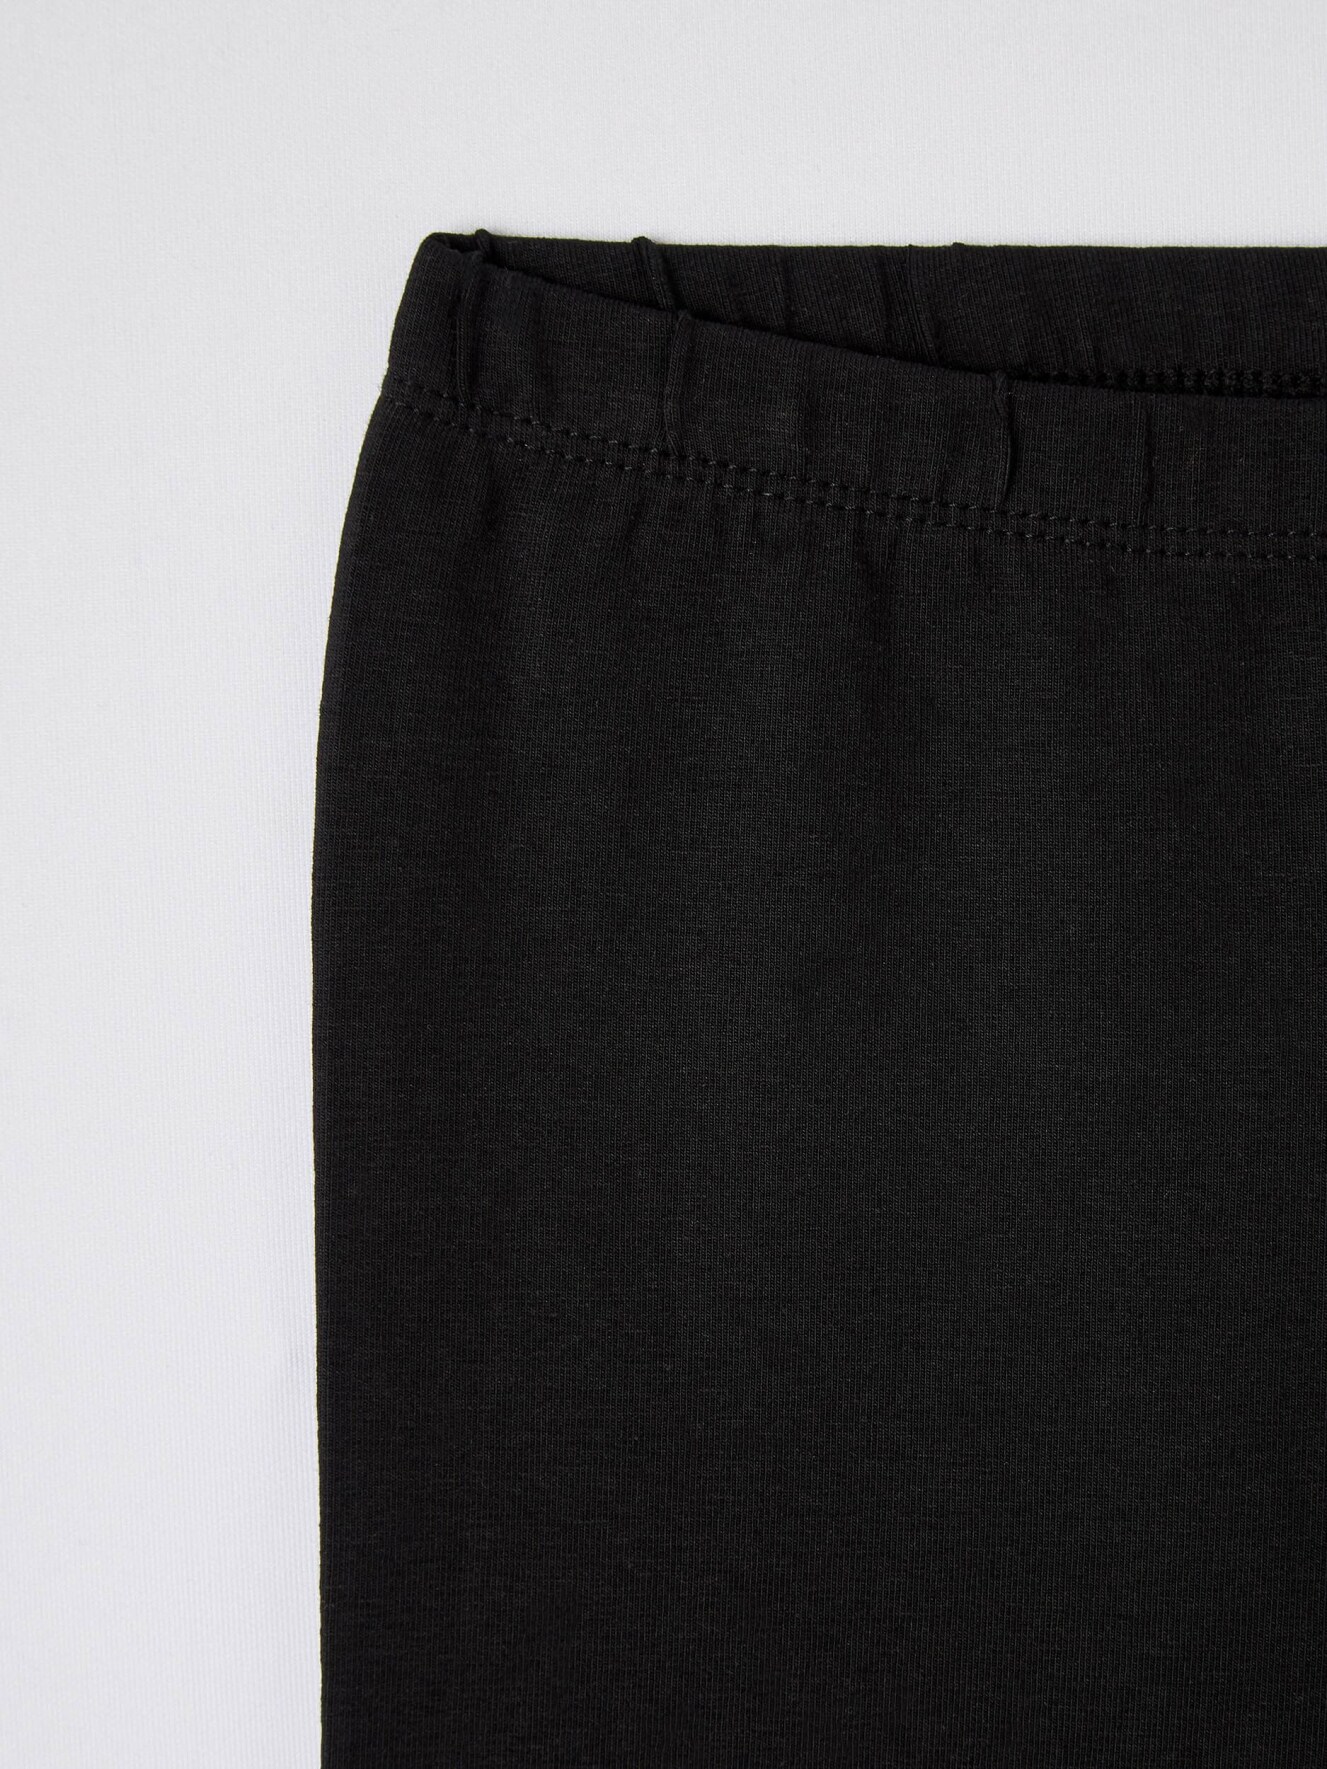 Black Basic single-colour full-length leggings - Buy Online